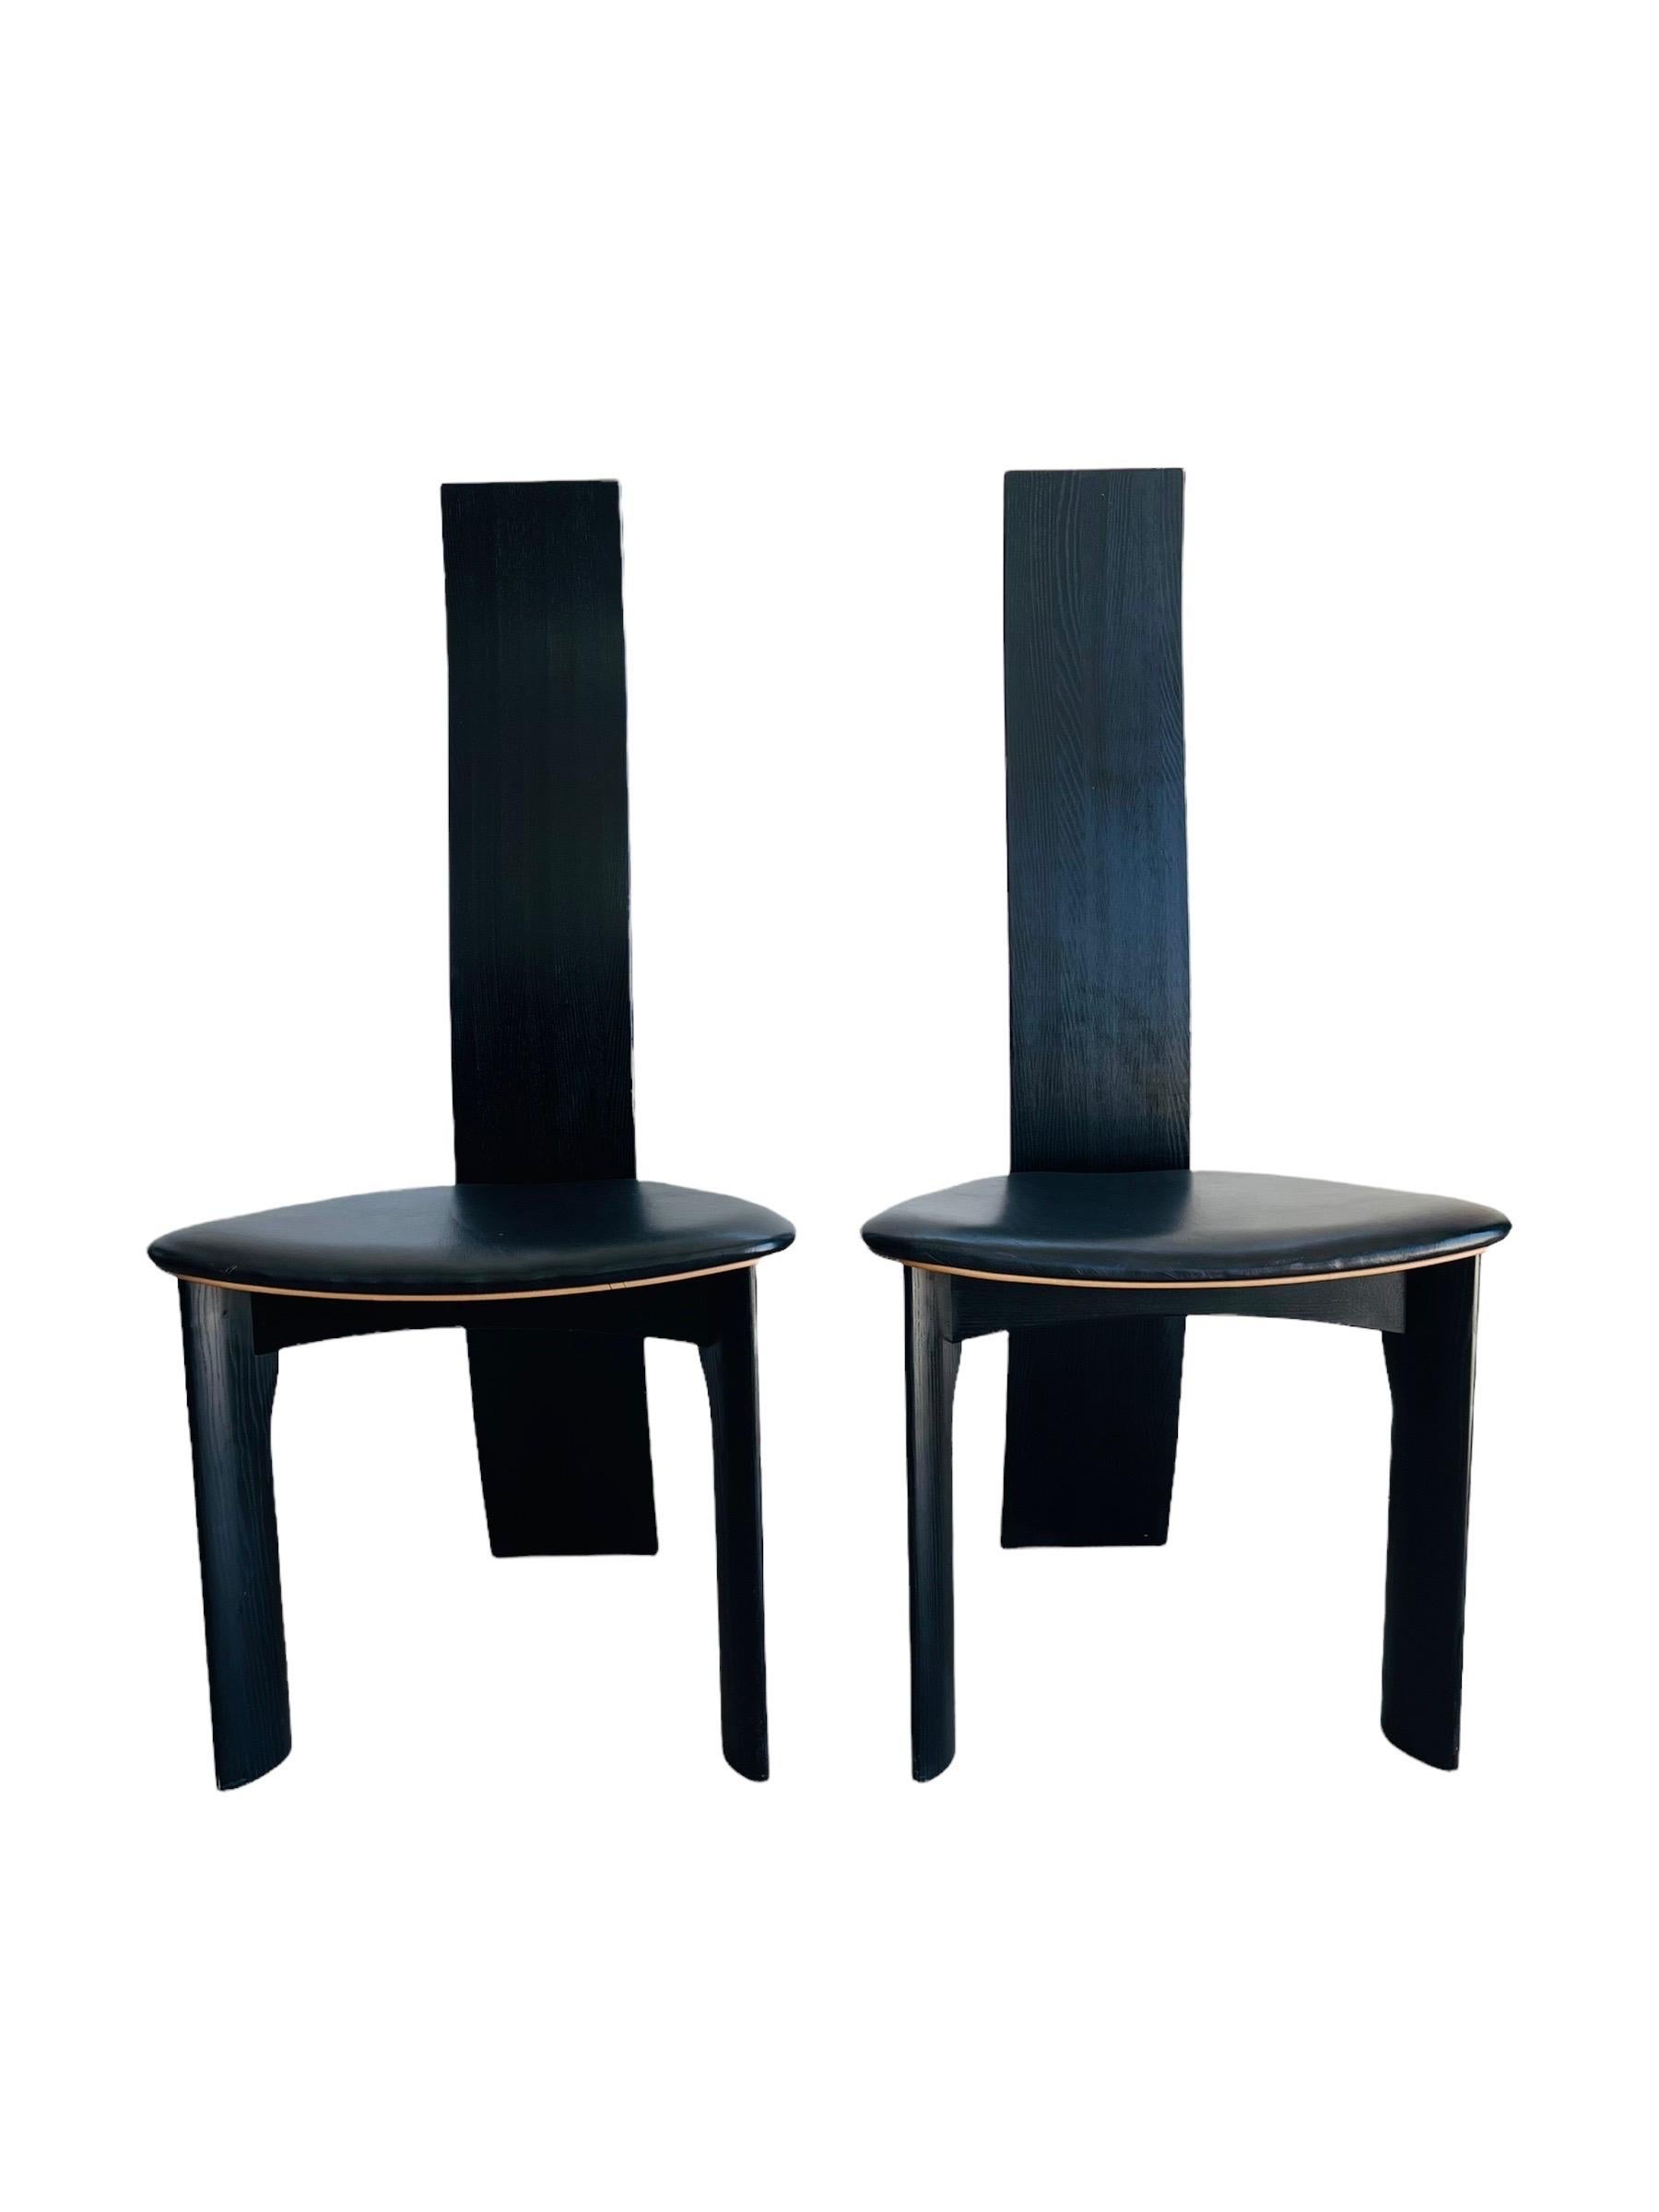 Ensemble de six chaises de salle à manger danoises ébonisées. Conçu en 1970 par Bob et Dries van den Bergh pour Tranekær Mobler. Les chaises sont en bon état vintage avec une usure normale correspondant à l'âge et à l'utilisation. 

Mesures : L